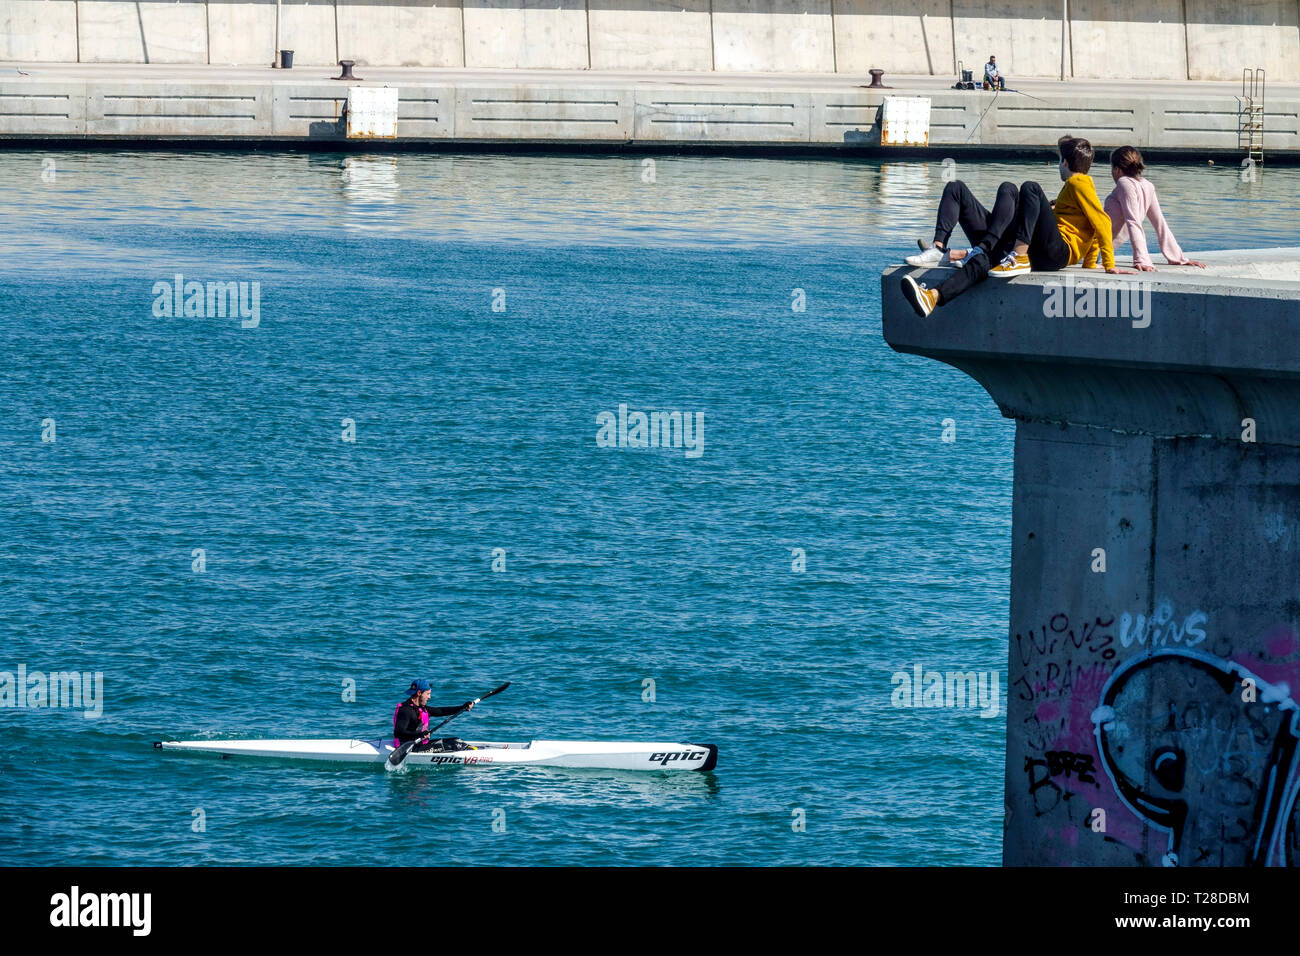 Un hombre kayak entra en un puerto tranquilo. Desde el muelle observándolo jóvenes, Valencia Port Spain estilo de vida de la ciudad Foto de stock